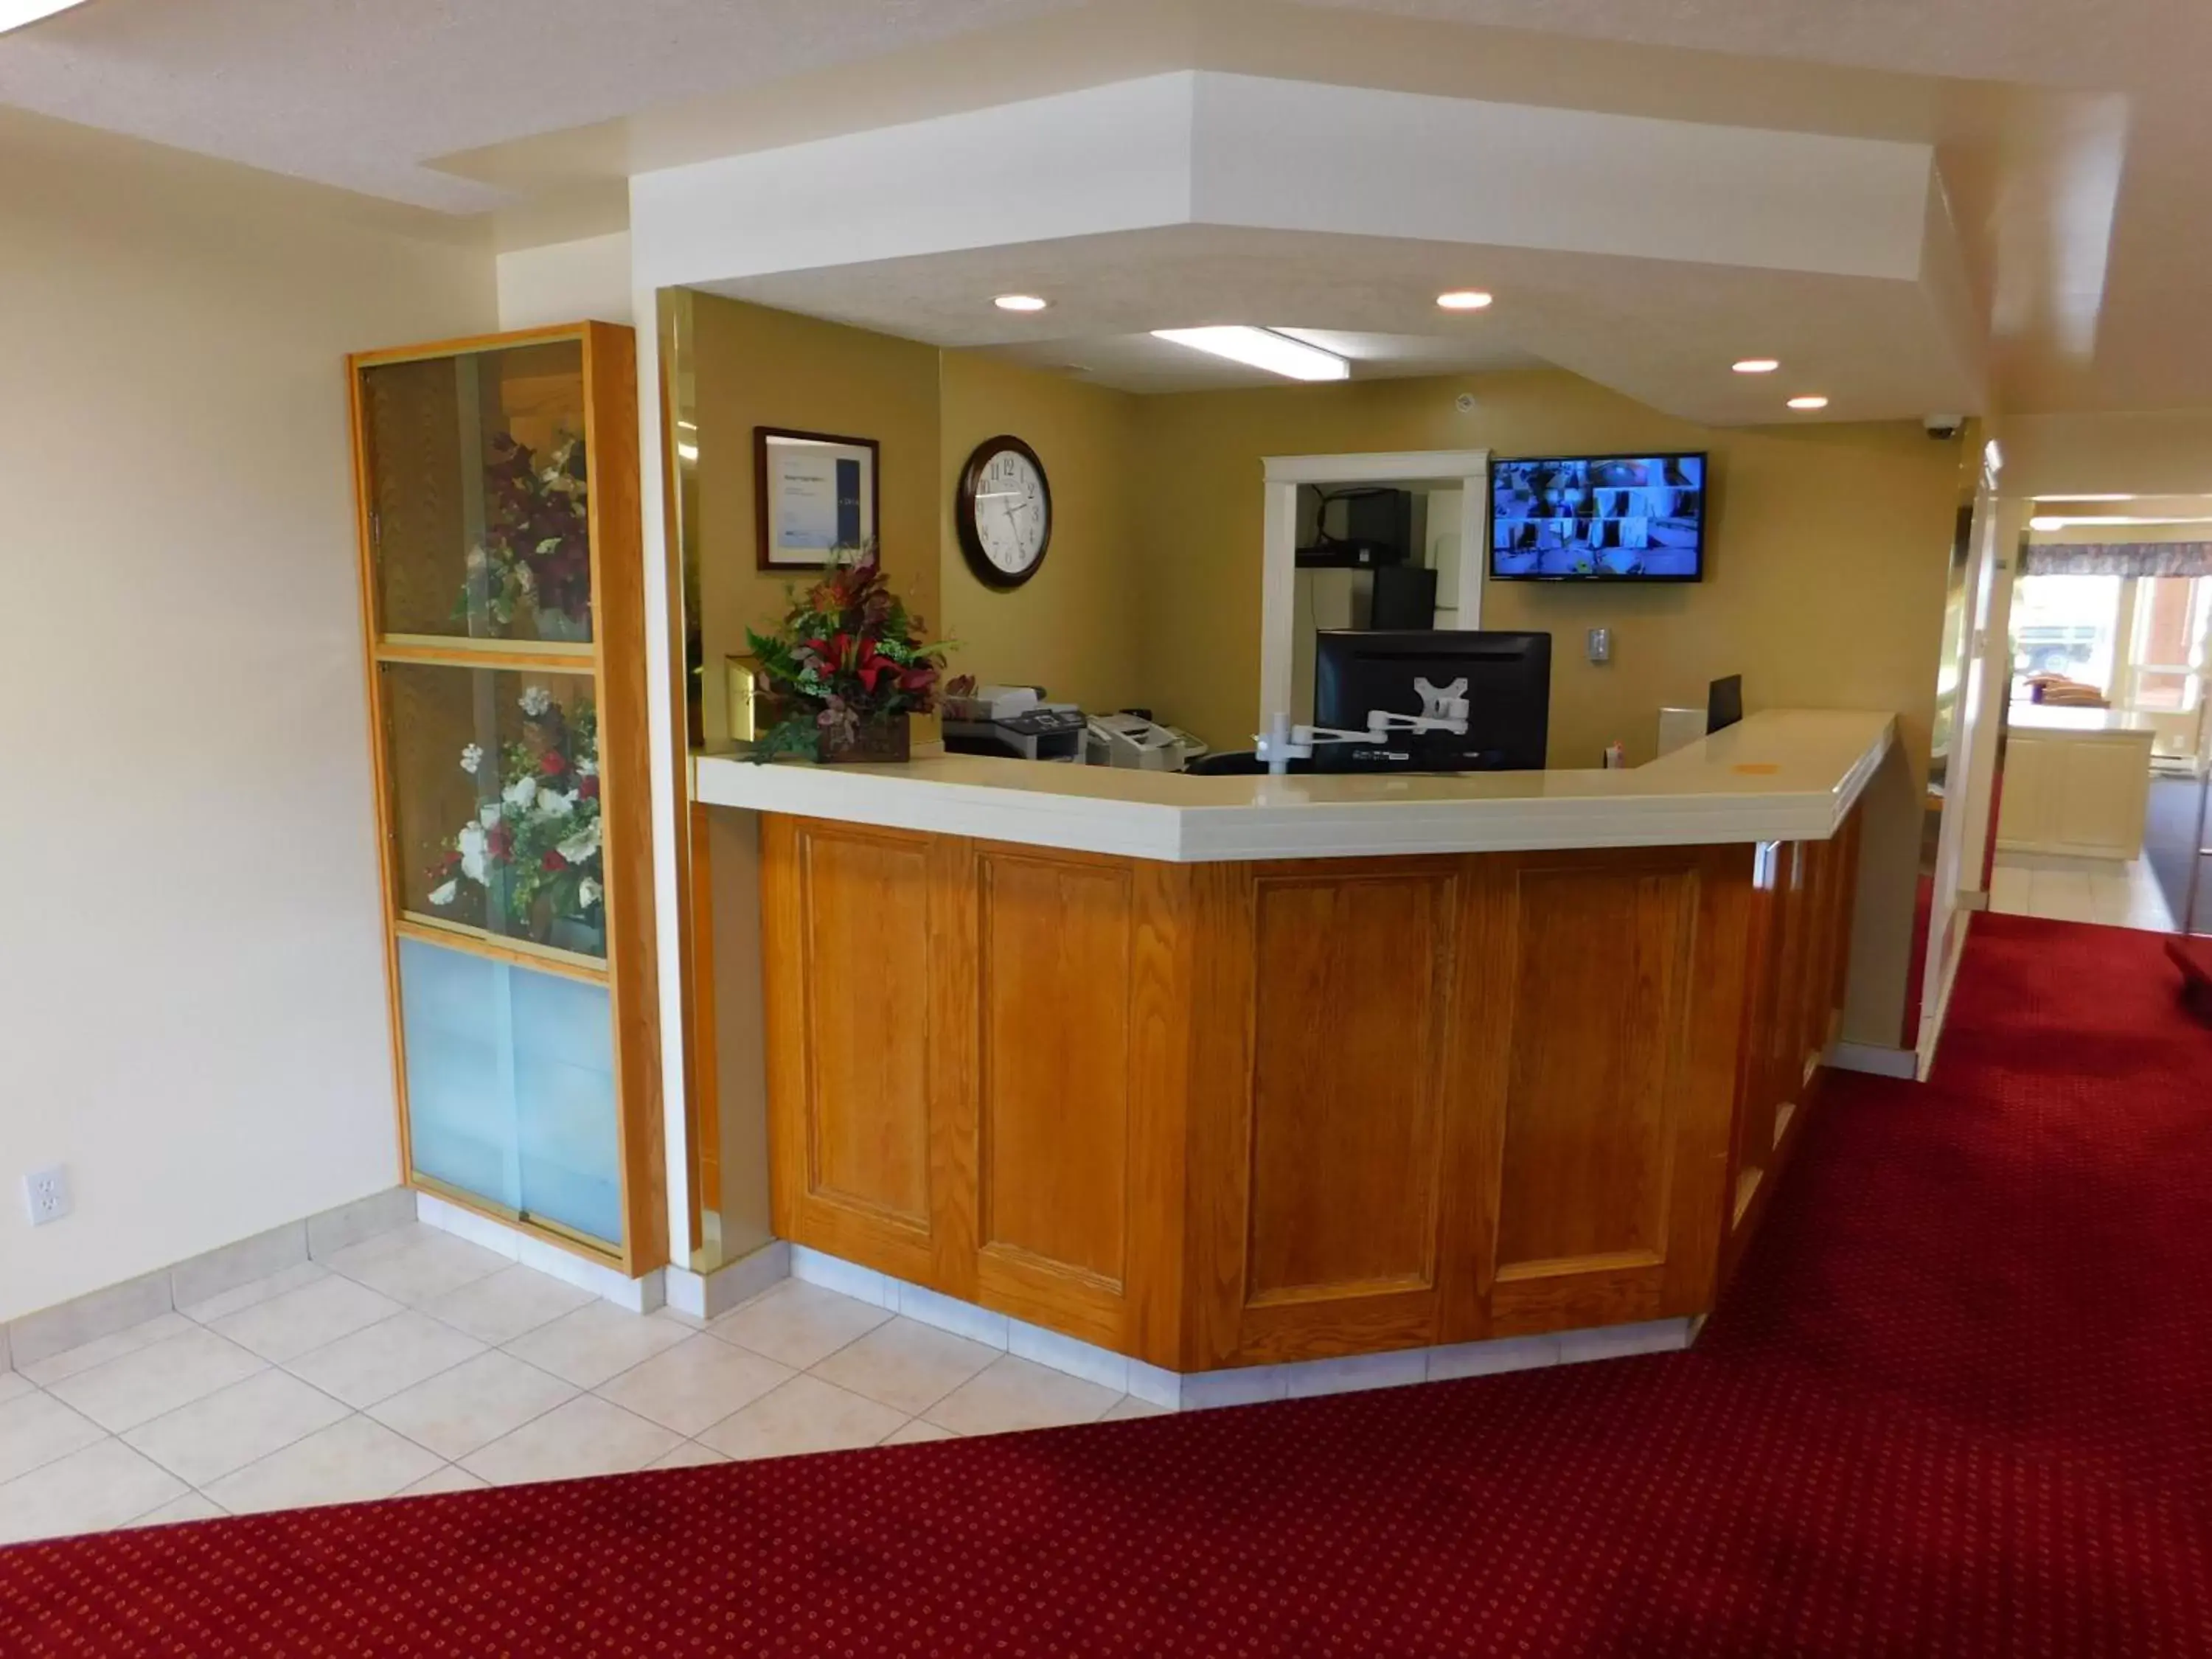 Lobby or reception, Lobby/Reception in Western Budget Motel #1 Leduc/Nisku